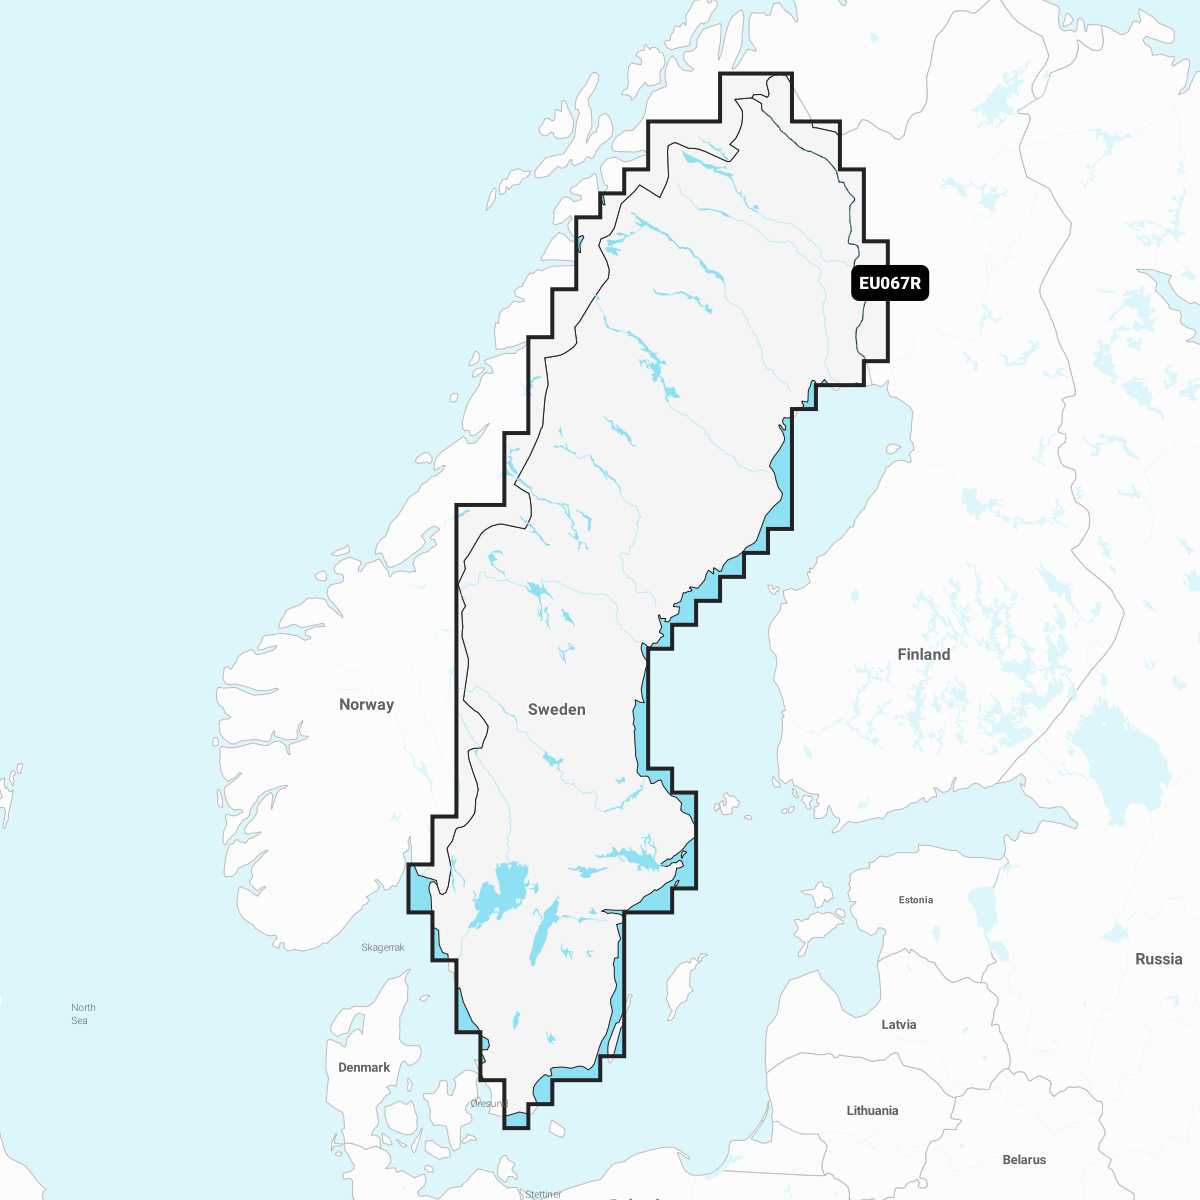 Garmin Sverige, søer og floder – indland søkort